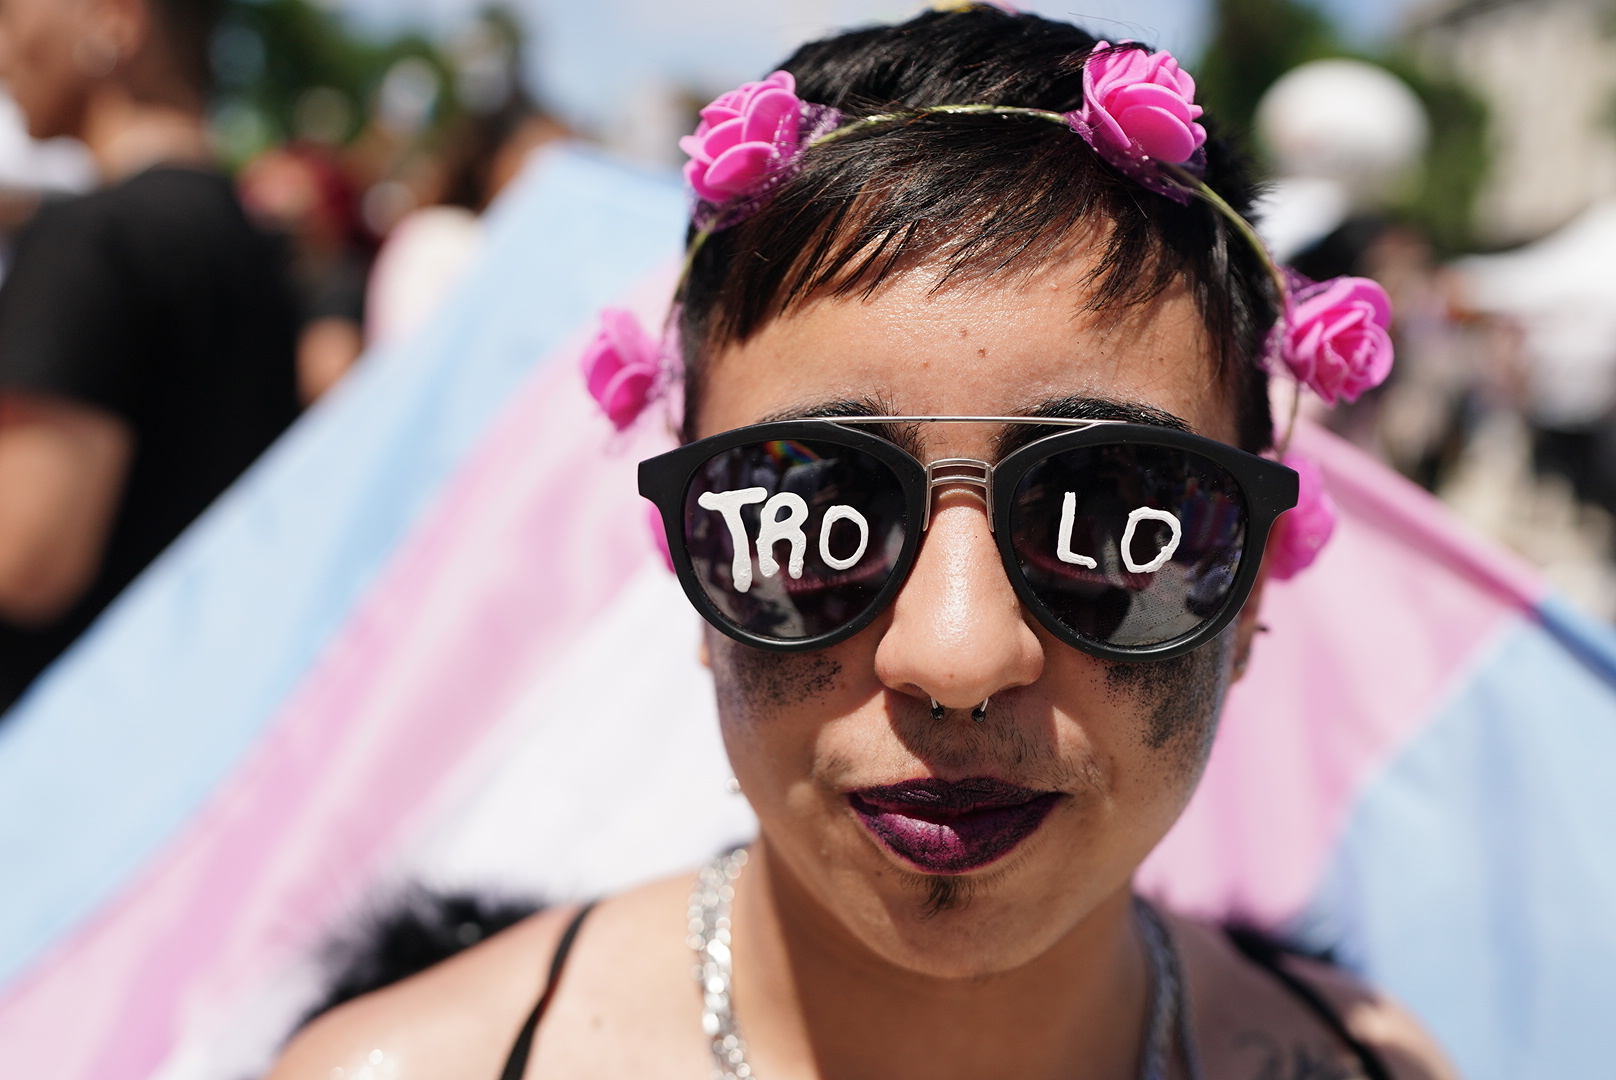 84 Fotos De La Marcha Del Orgullo Disfraces Celebración Y Los